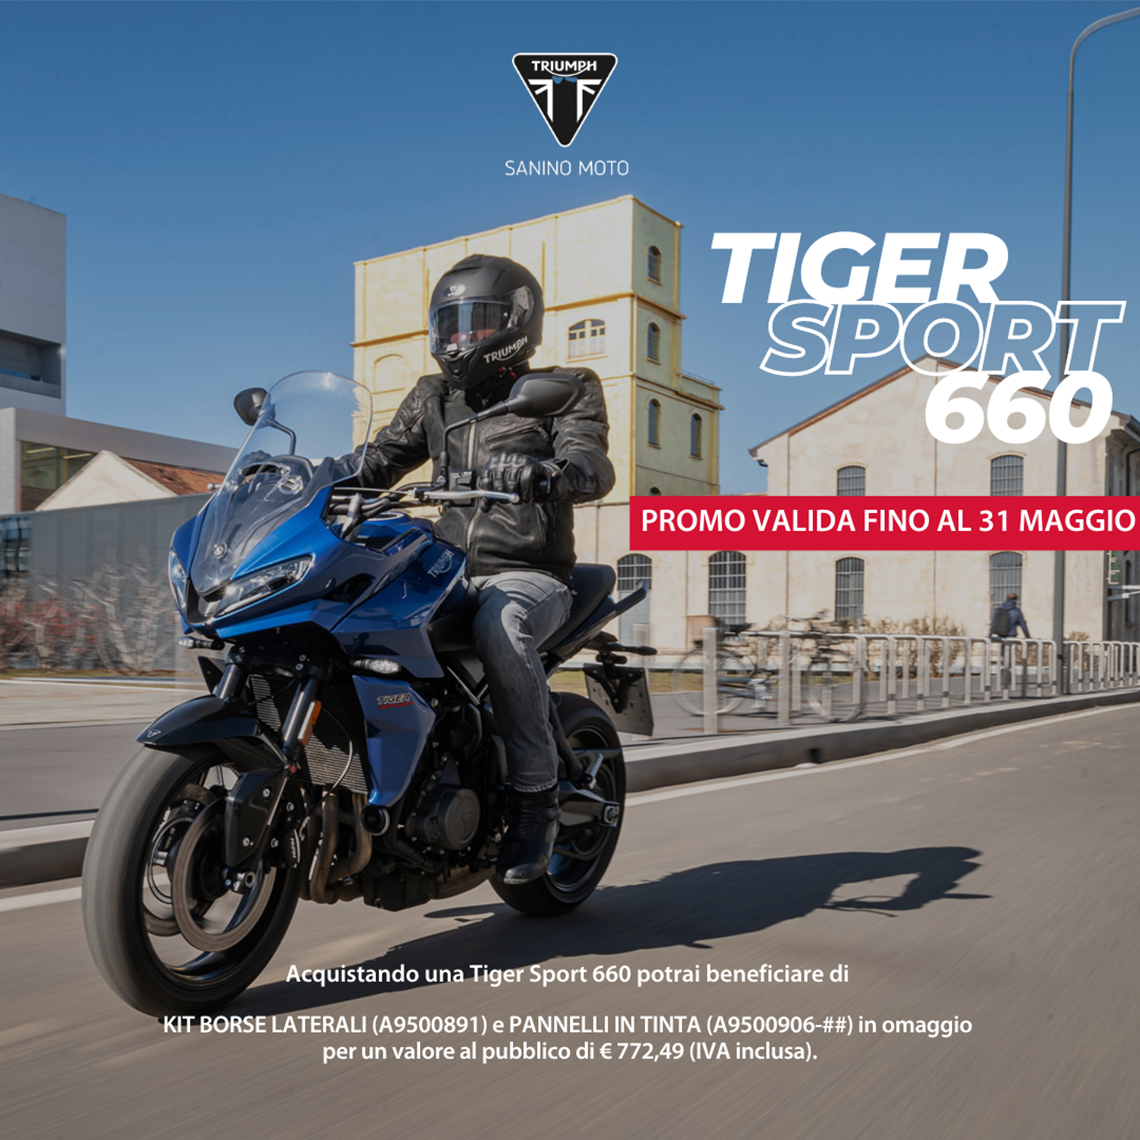 Tiger Sport 660, TUA A 81€ AL MESE